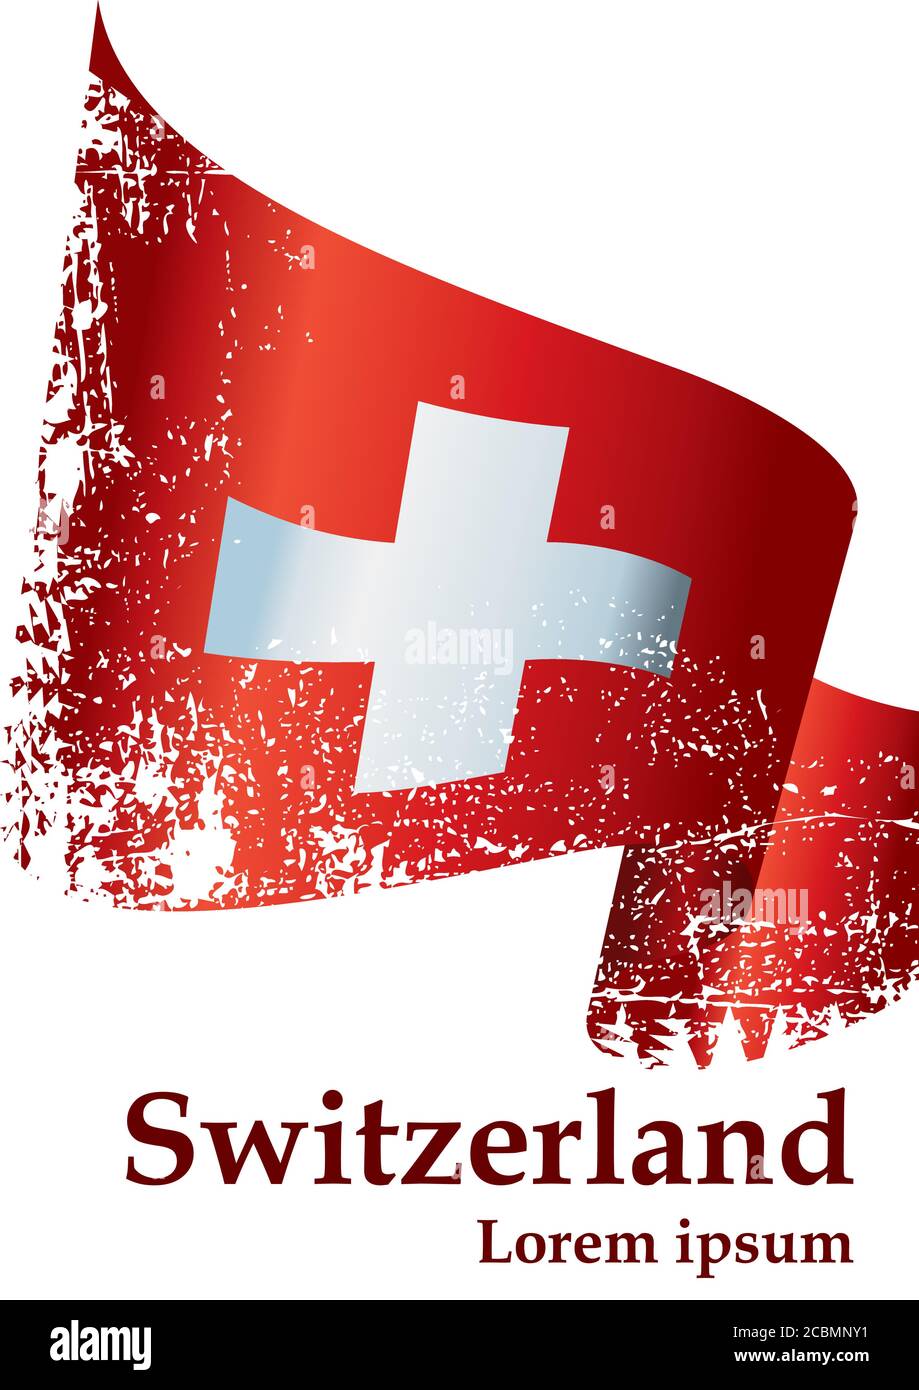 Flagge der Schweiz, Schweizerische Eidgenossenschaft. Vorlage für Award Design, ein offizielles Dokument mit der Flagge der Schweiz. Stock Vektor